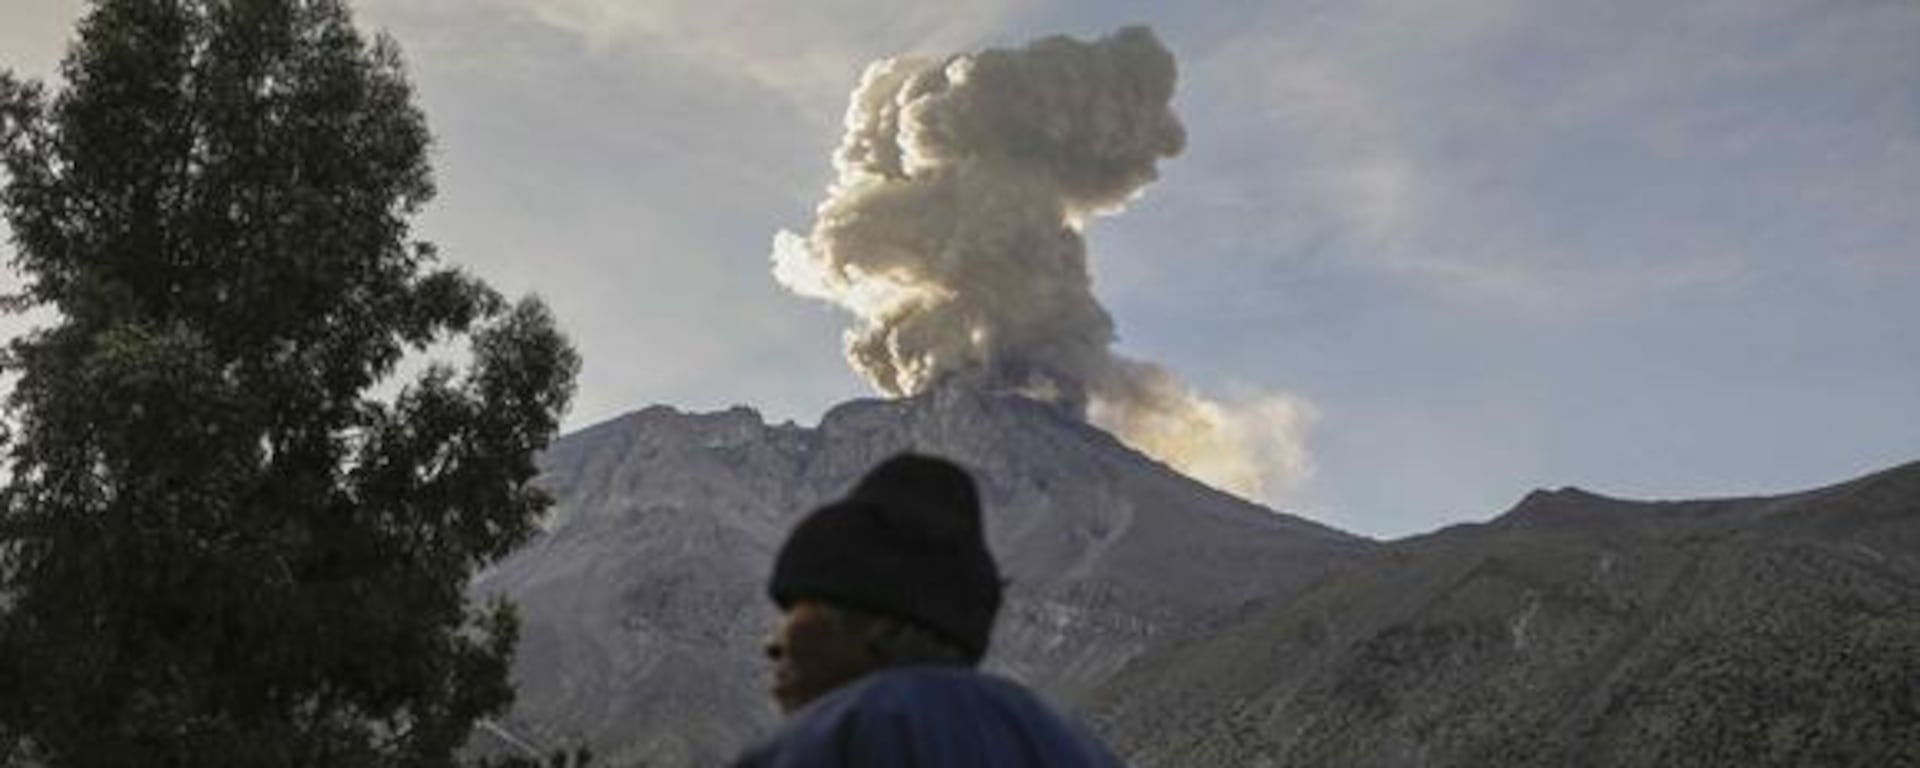 Nueva explosión del volcán Ubinas: diariamente se registran cerca de 170 sismos en la zona de monitoreo